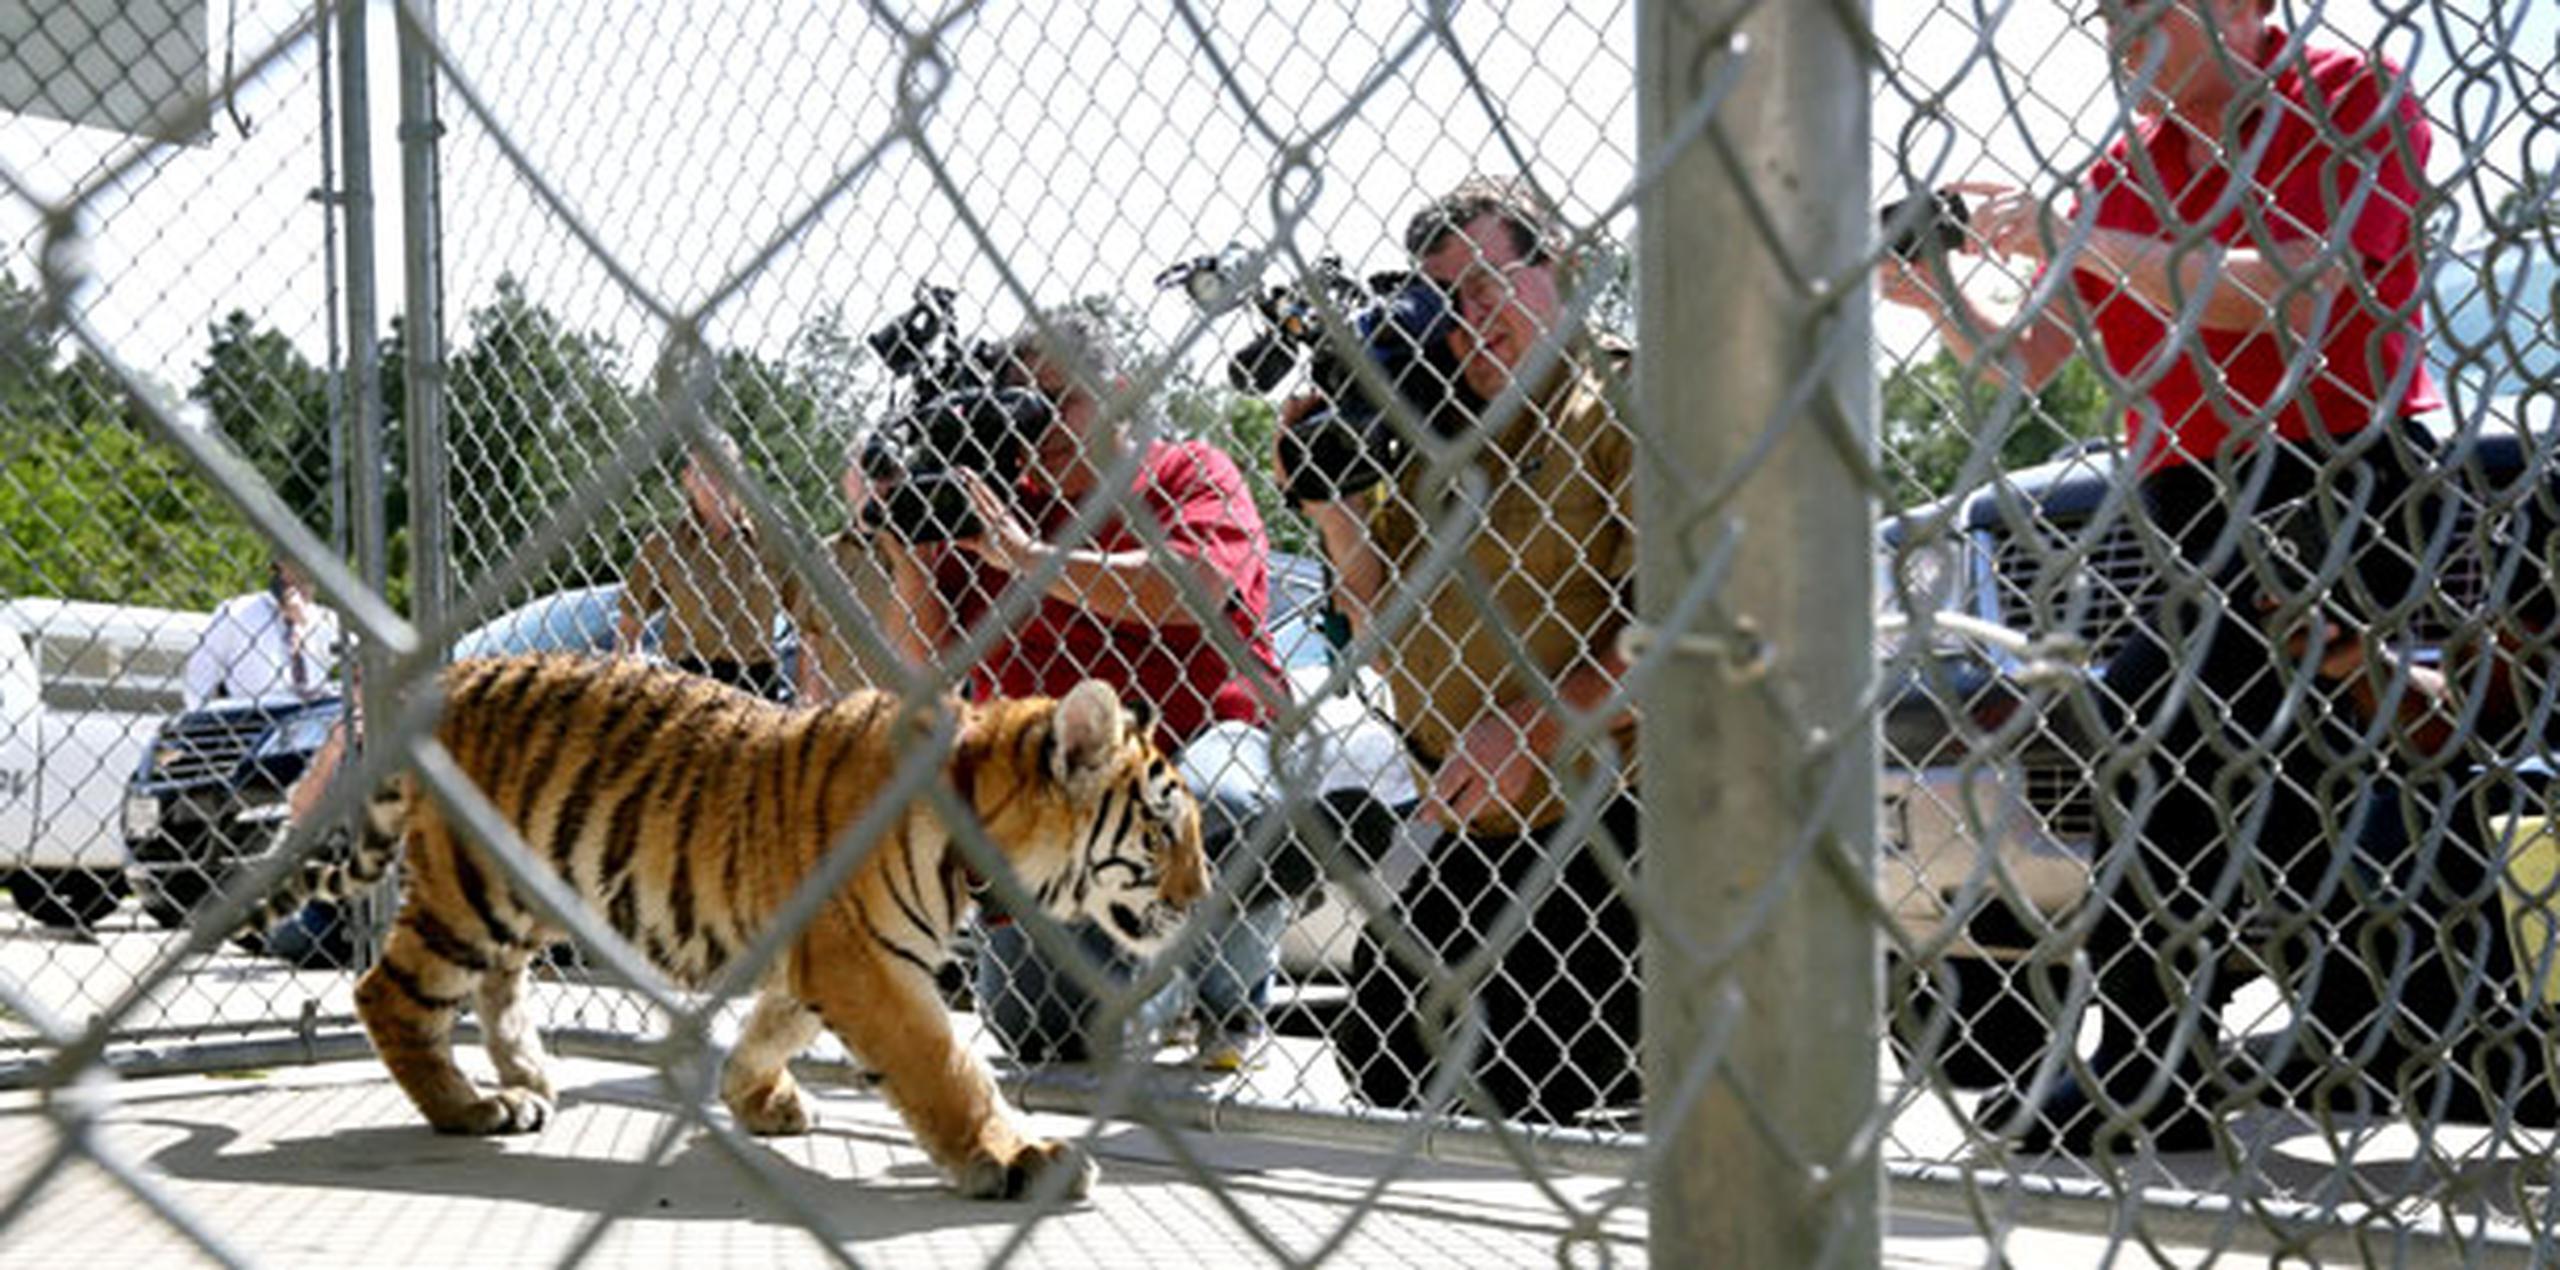 Aunque en Texas es legal tener un tigre como mascota, los dueños se enfrentan a una multa porque la ciudad de Conroe tiene una ordenanza que prohíbe "animales peligrosos" dentro de sus límites. (Jon Shapley/Houston Chronicle via AP)